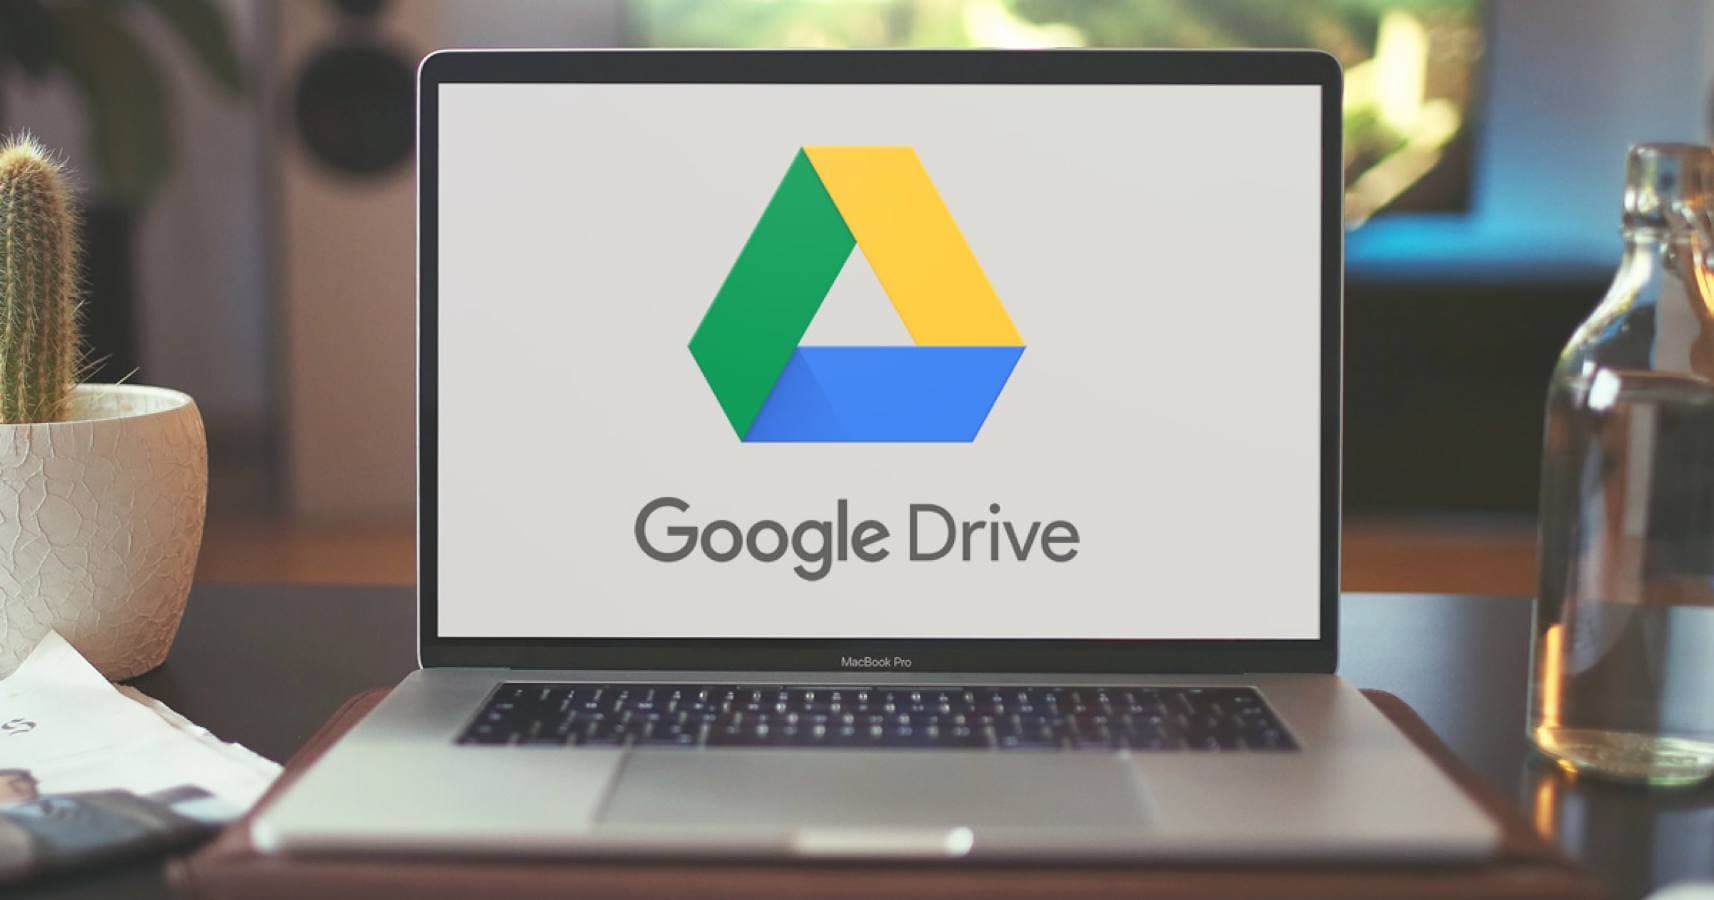 download google drive desktop client